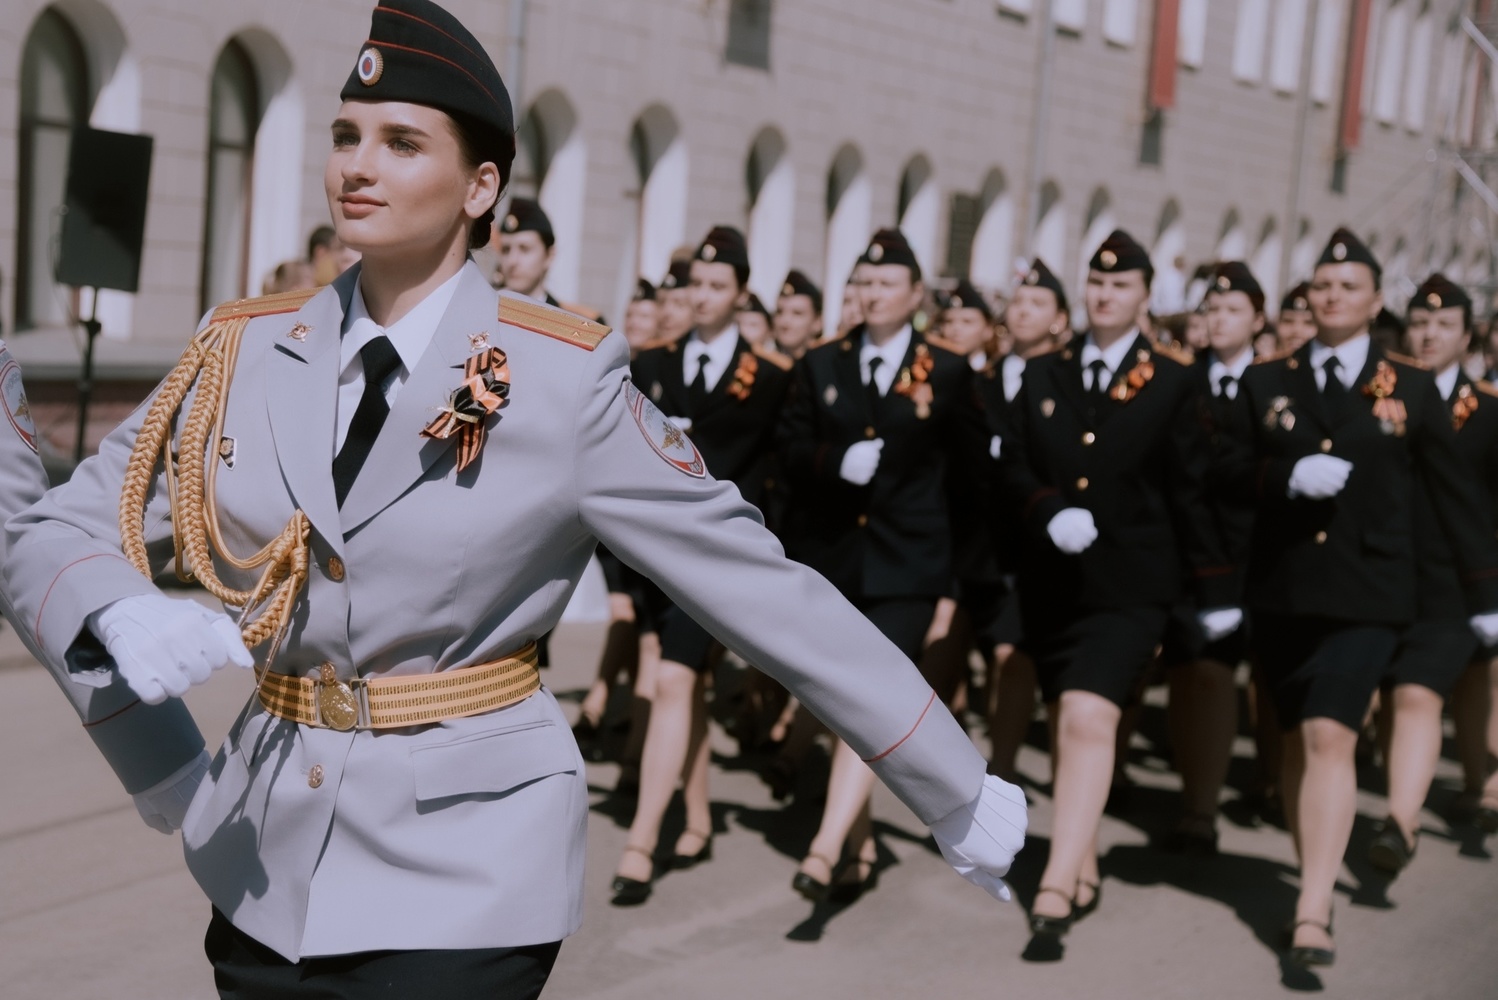 Возложение цветов, фронтовики, парад техники и шествие «коробок»: в Томске встретили 79-ю годовщину Великой Победы